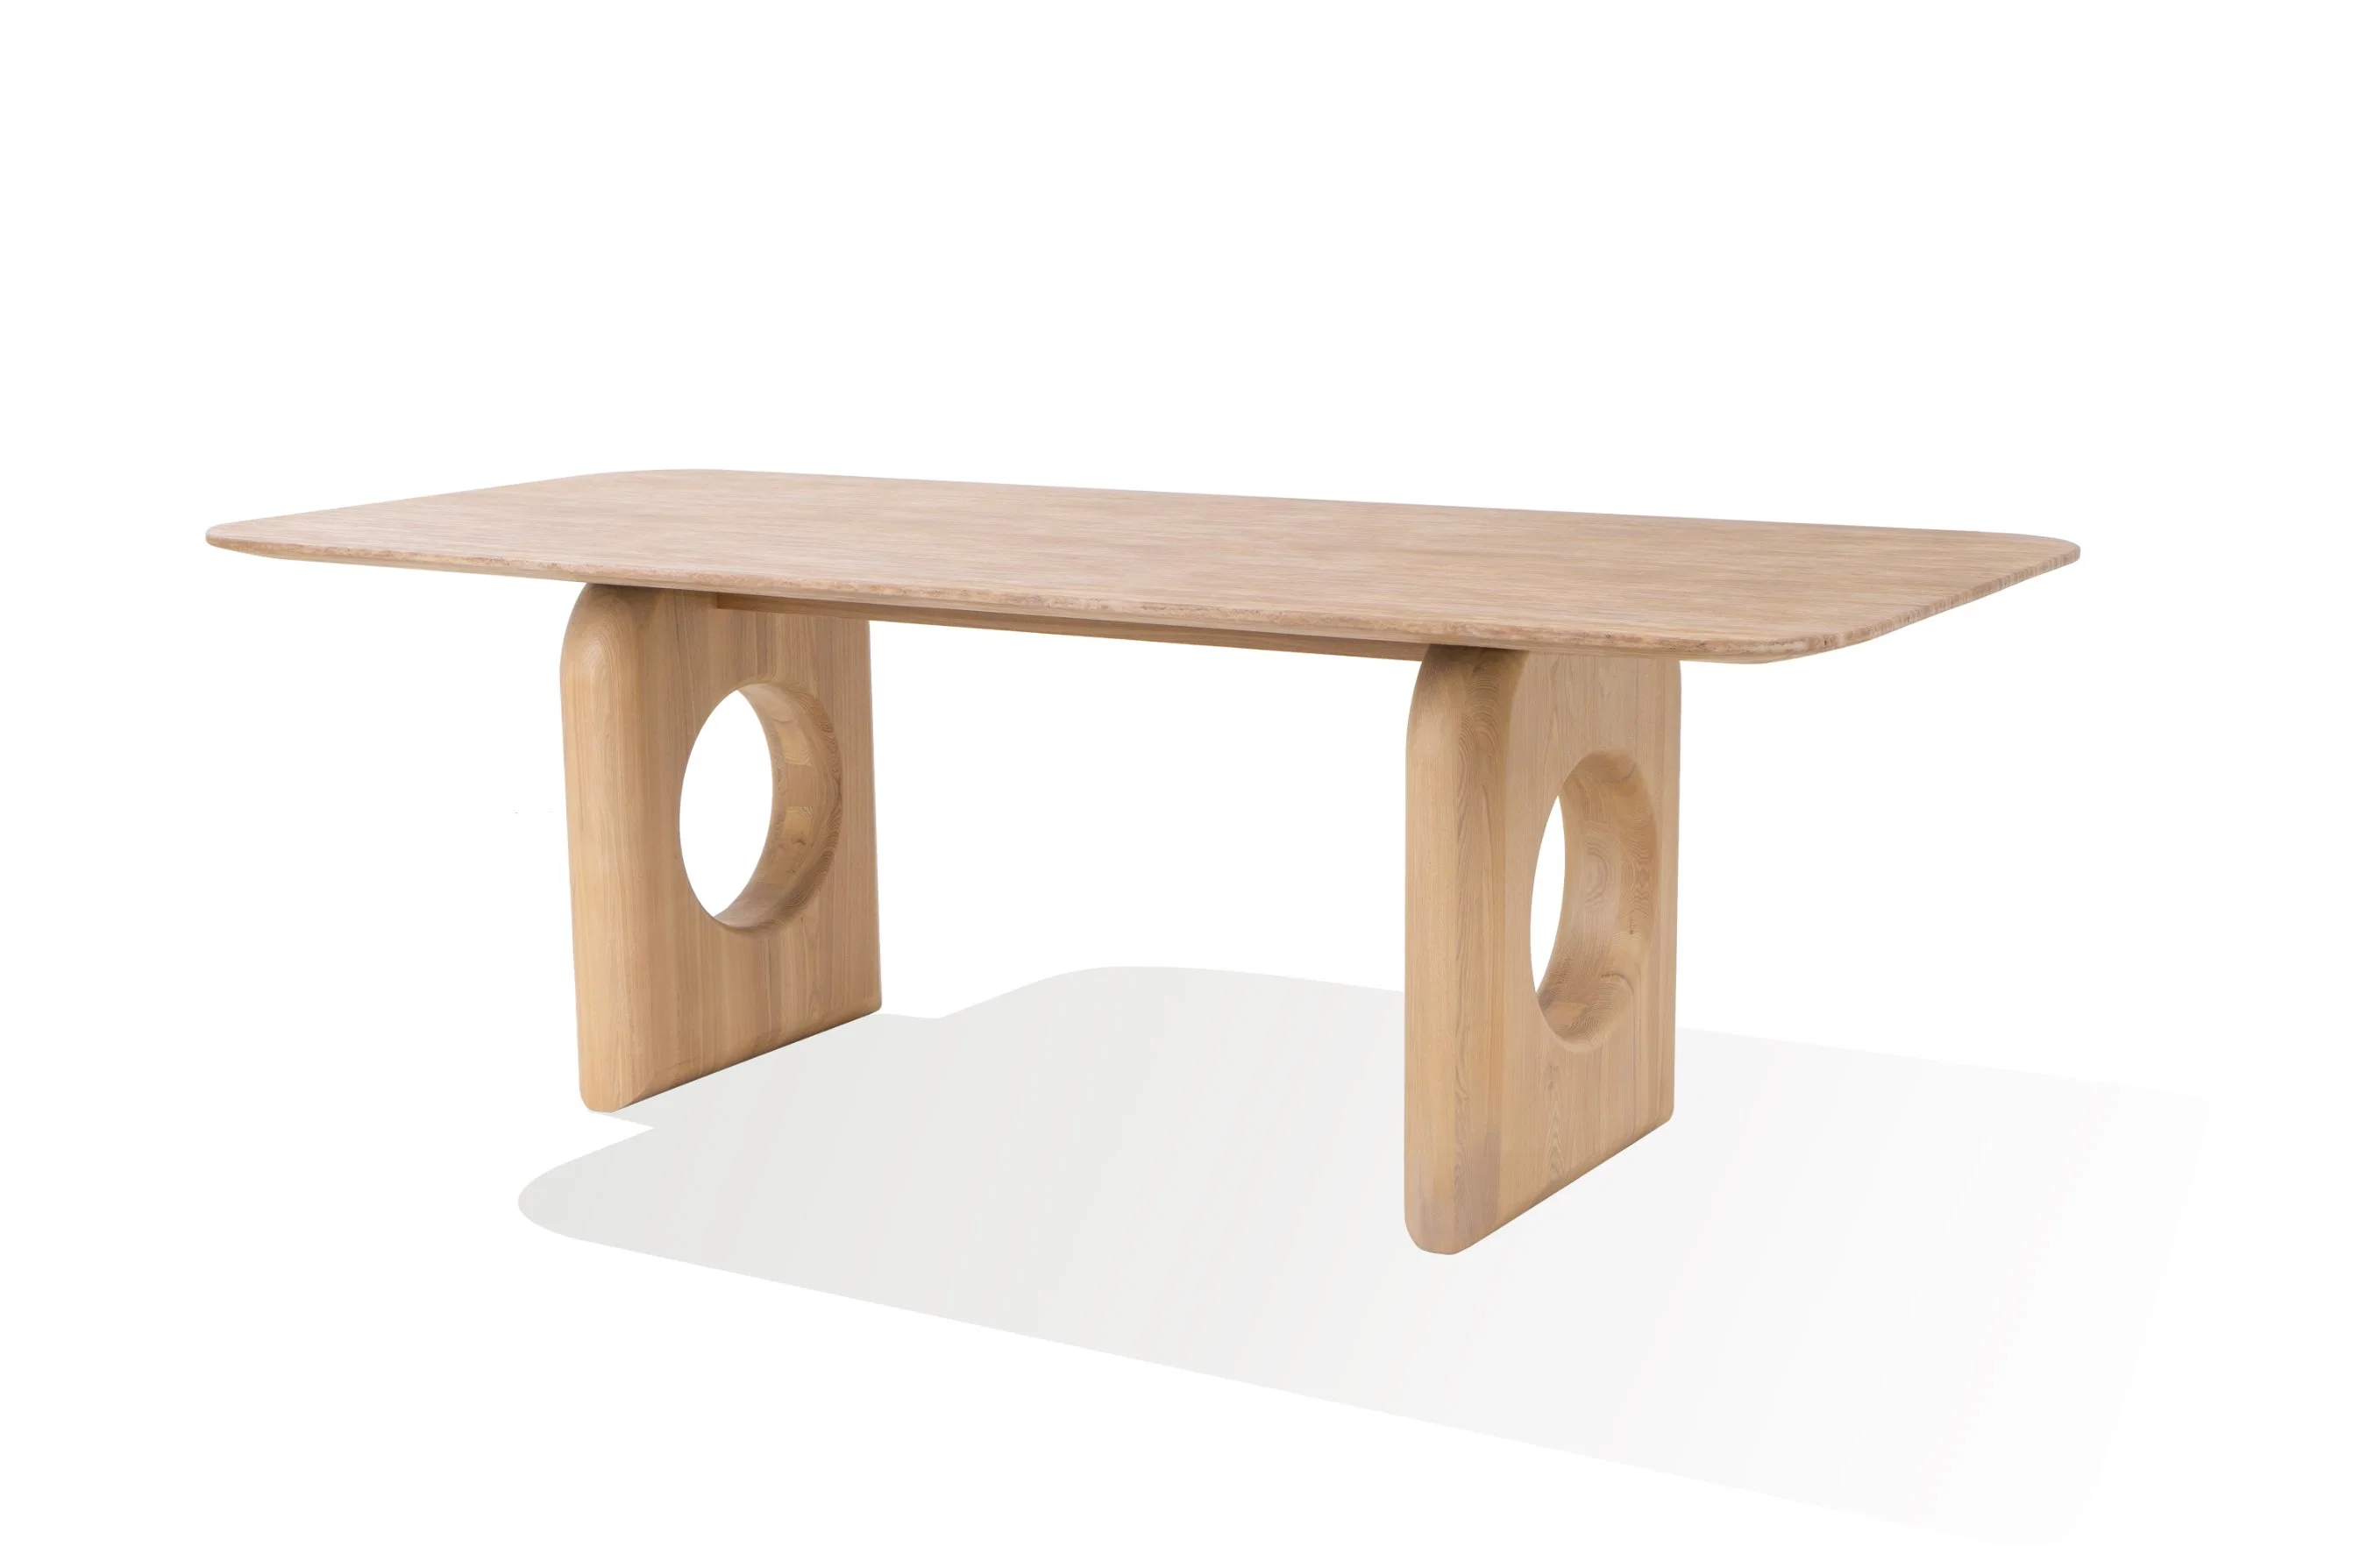 CS Home New Design Style Esstisch mit Stuhl Alle Esche Holz Top und Basis Restaurant Tisch